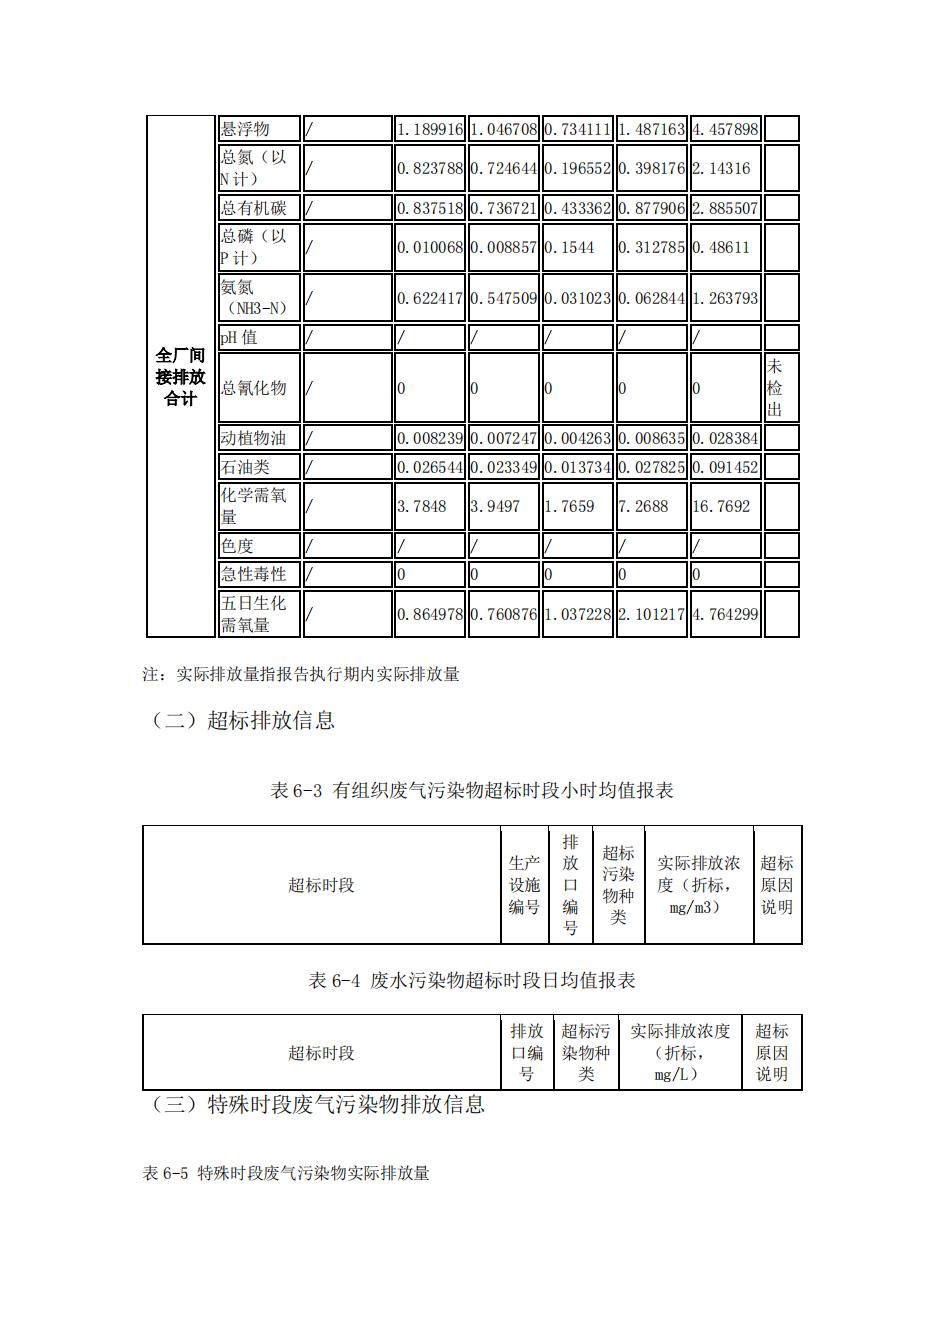 南京888集团电子游戏2022年环境信息披露_42.jpg